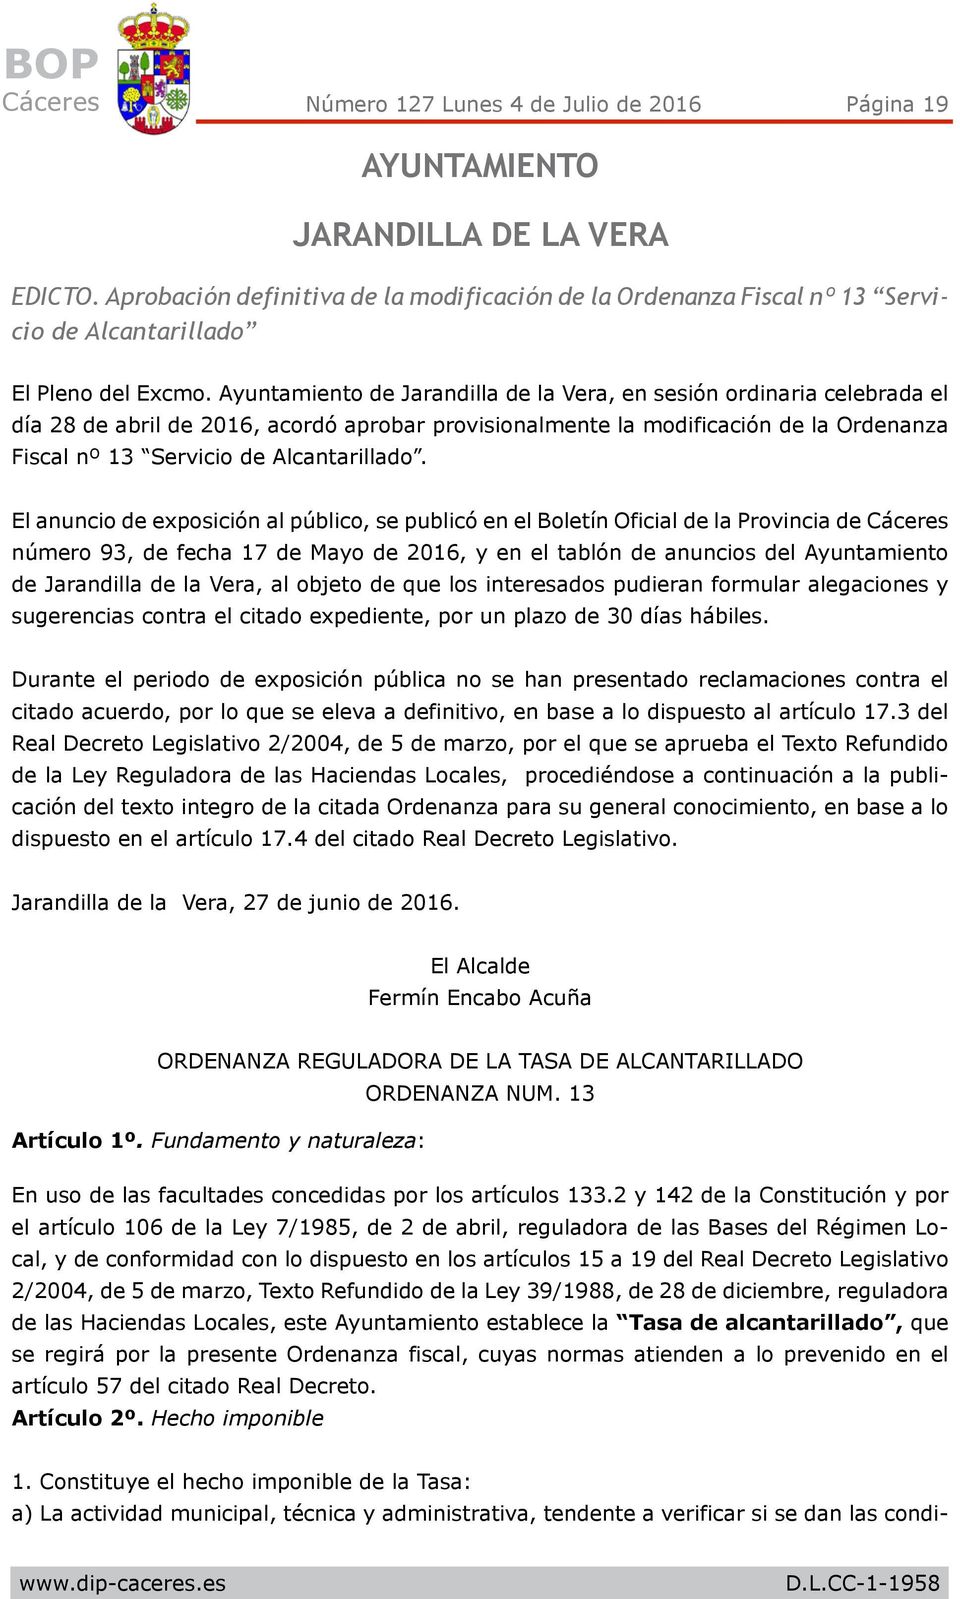 Ayuntamiento de Jarandilla de la Vera, en sesión ordinaria celebrada el día 28 de abril de 2016, acordó aprobar provisionalmente la modificación de la Ordenanza Fiscal nº 13 Servicio de